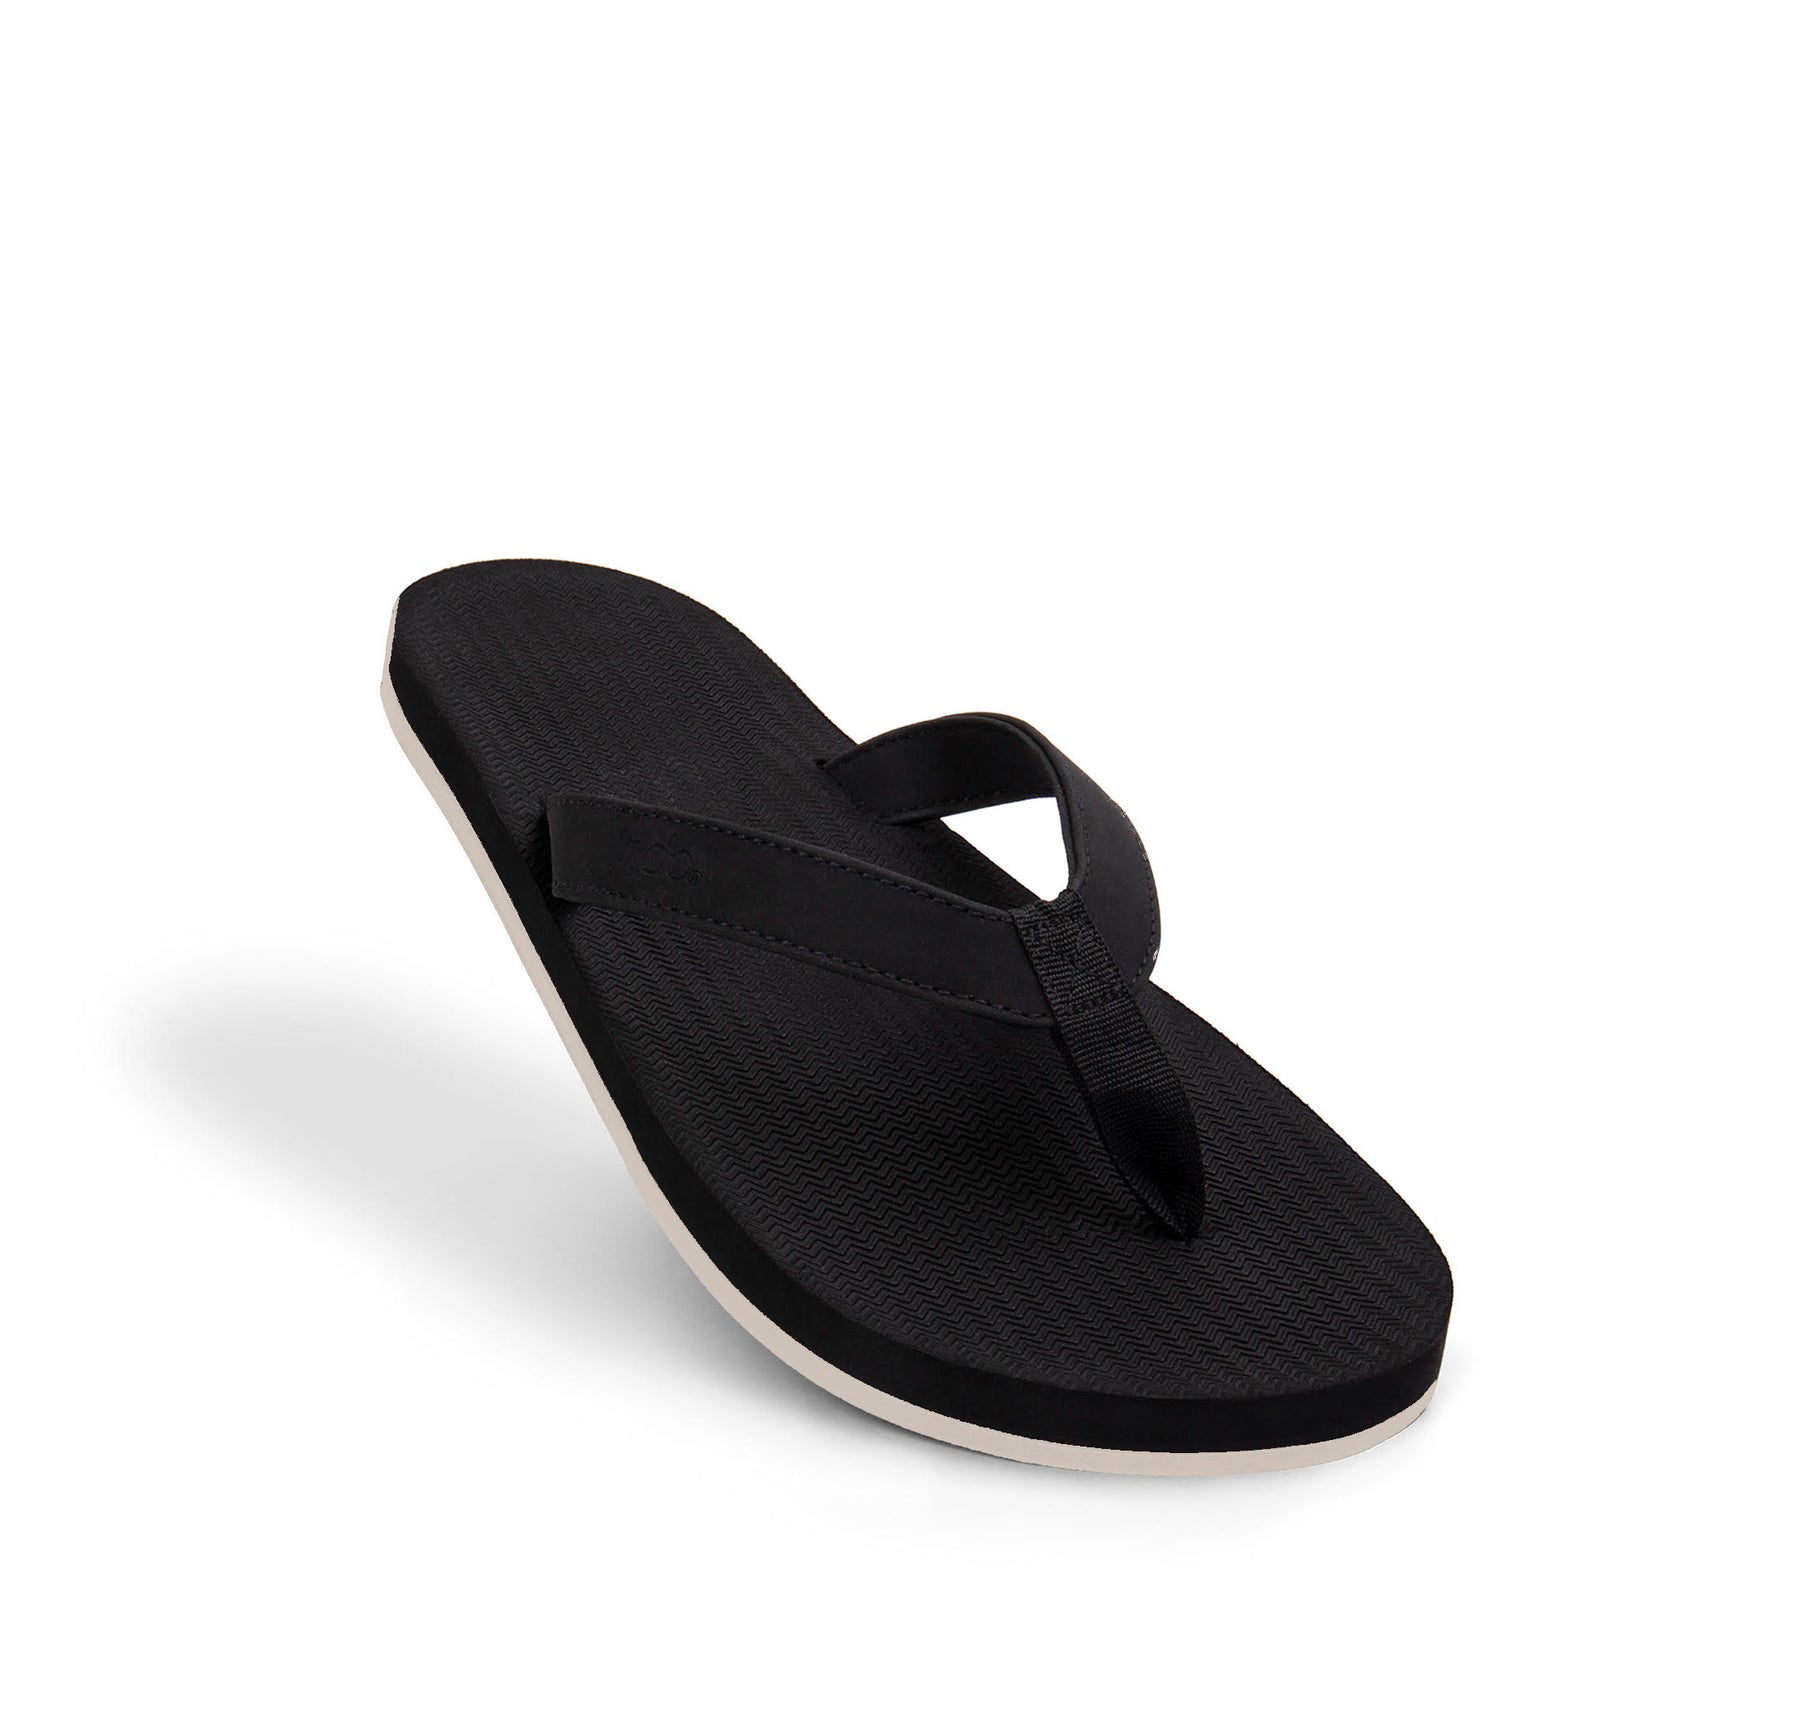 Men's Flip Flops Sneaker Sole - Black/Sea Salt Sole